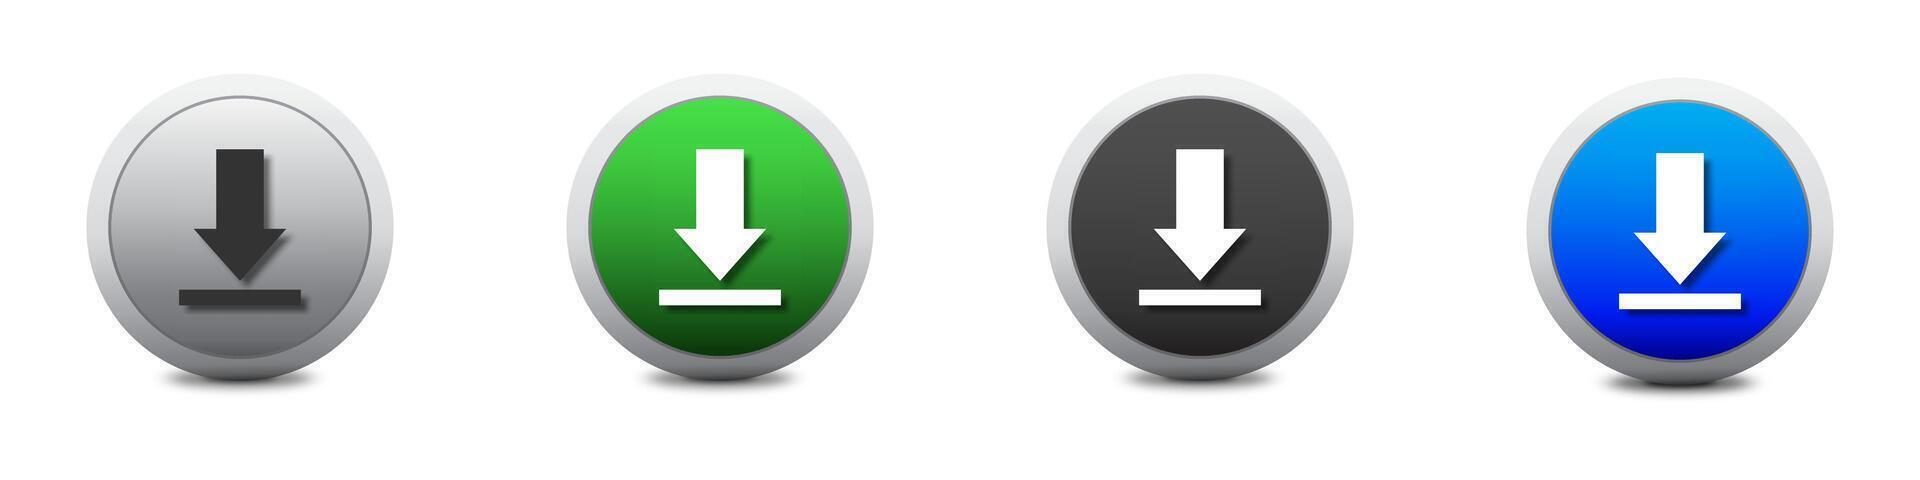 Télécharger icône ensemble. télécharger bouton. charge symbole. rond coloré boutons avec ombres en dessous de il. plat vecteur illustration.